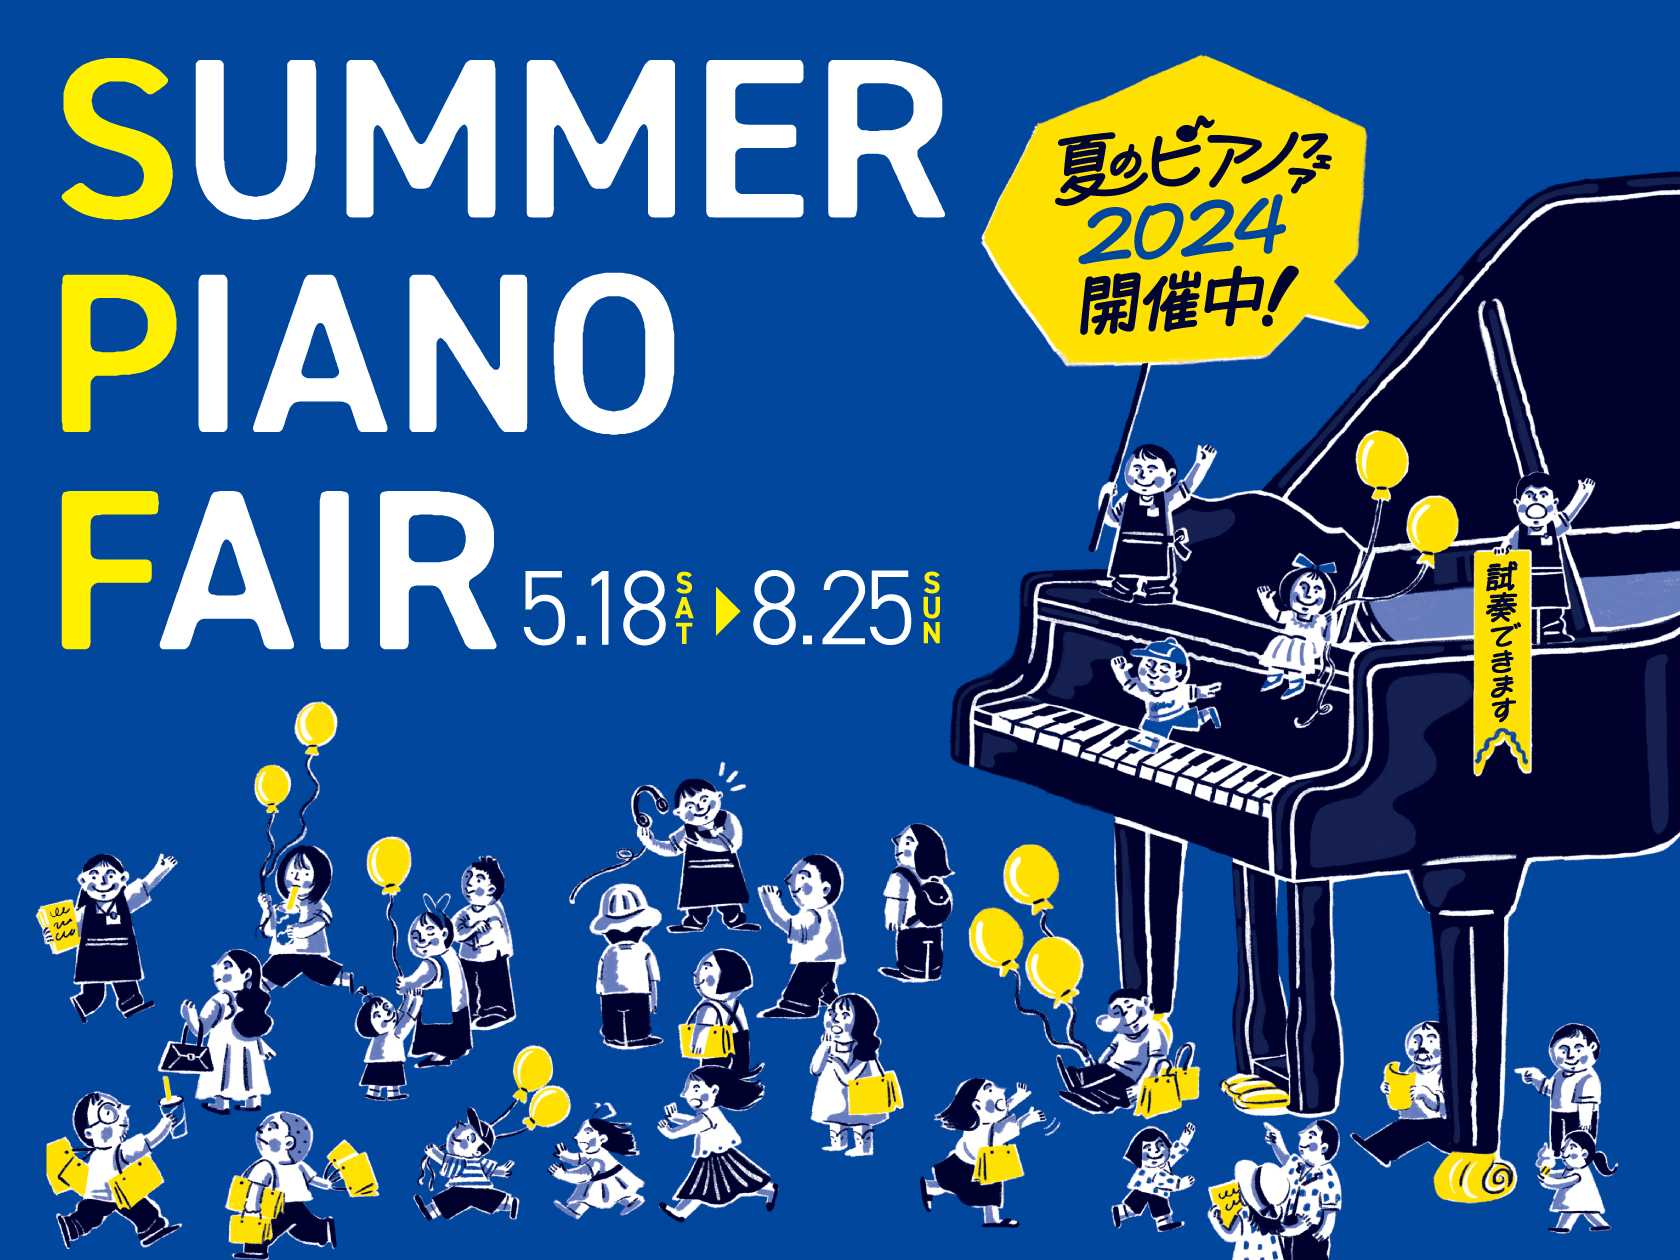 皆さん、こんにちは！ピアノ担当の田中です。 現在島村楽器名古屋mozoオーパ店では「夏のピアノフェア」を開催中です。YAMAHA編,KAWAI編,Roland編をお送りしましたが、今回はCASIOの電子ピアノの特典をご案内致します。 CONTENTSペダルをセットで買うとお得！＆ヘッドフォンプレゼン […]